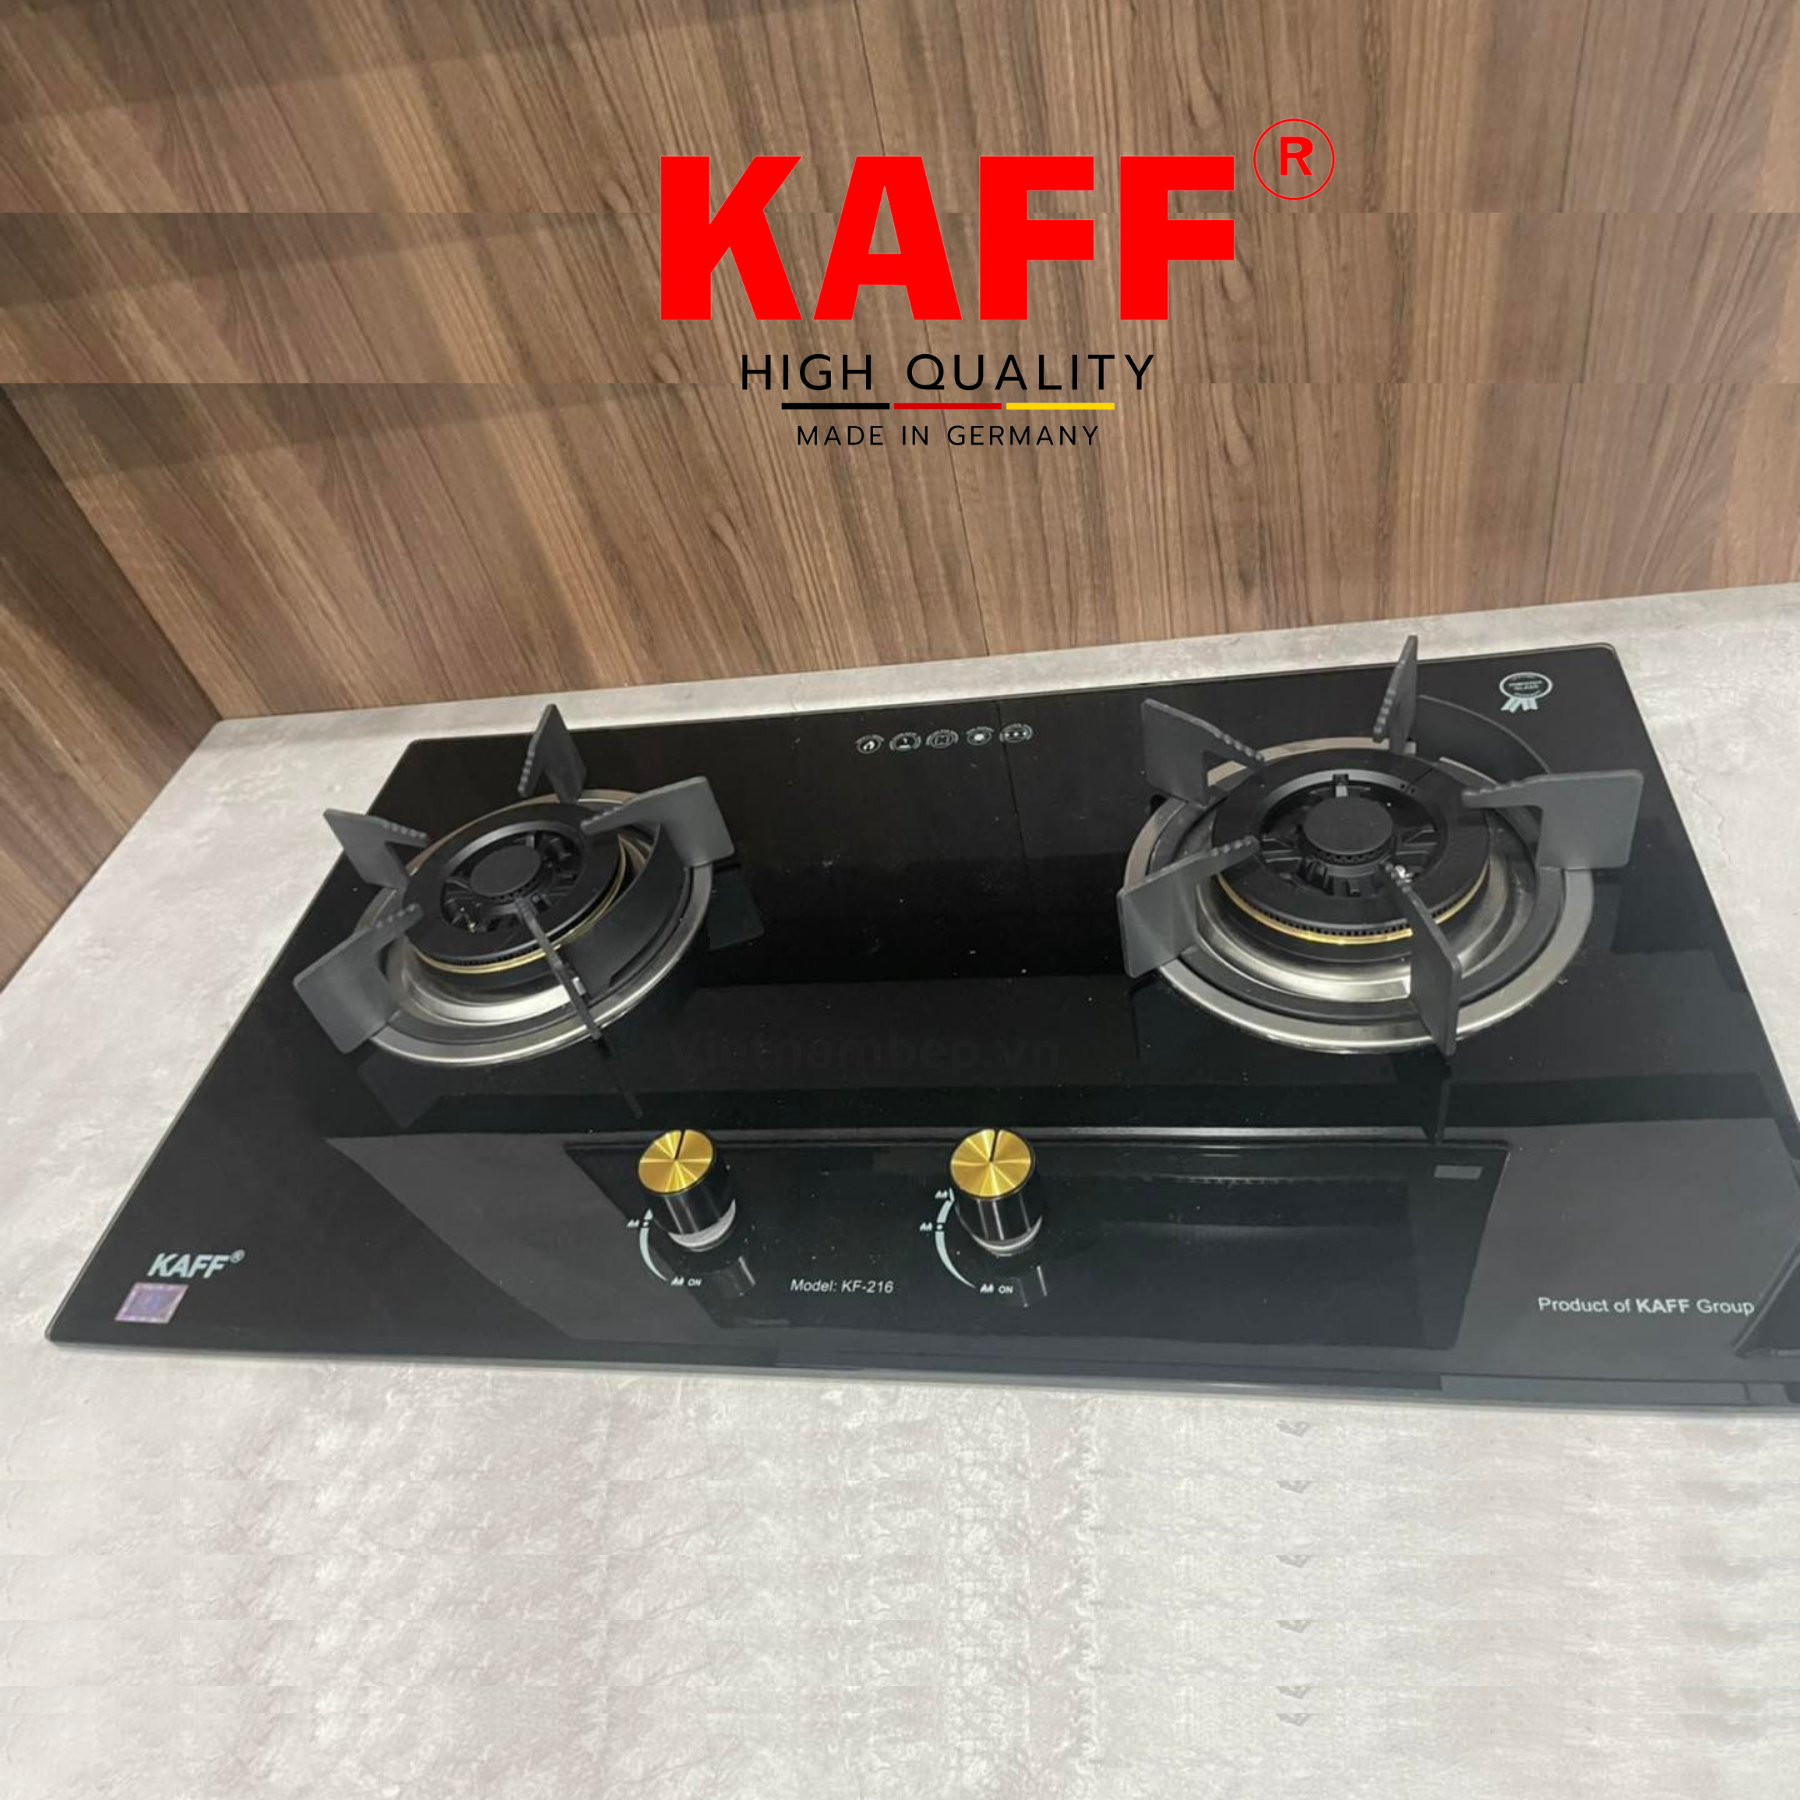 Bộ Bếp ga âm KAFF KF- 216 bao gồm: Bếp ga + chảo chống dính cao cấp + bộ van ga - Hàng chính hãng